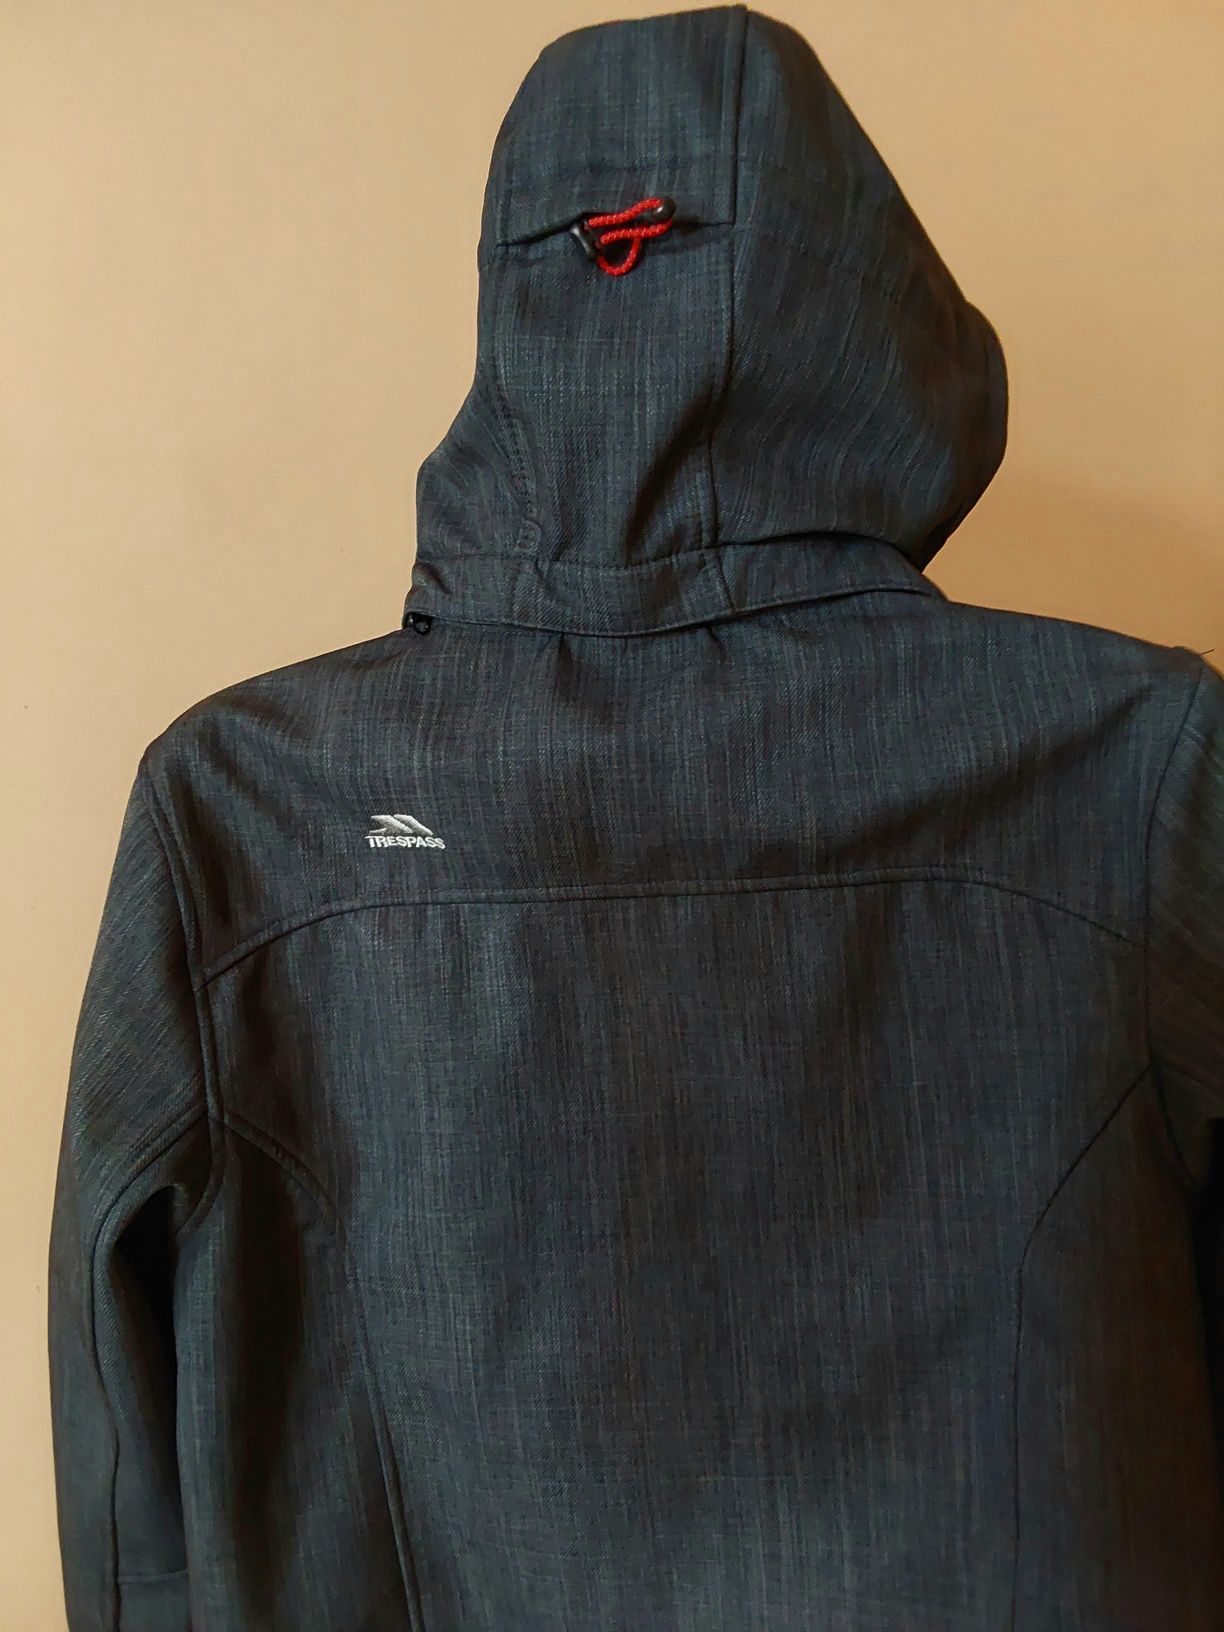 Куртка мужская Trespass Waterproof/мембранна /термокуртка  Forzclaz